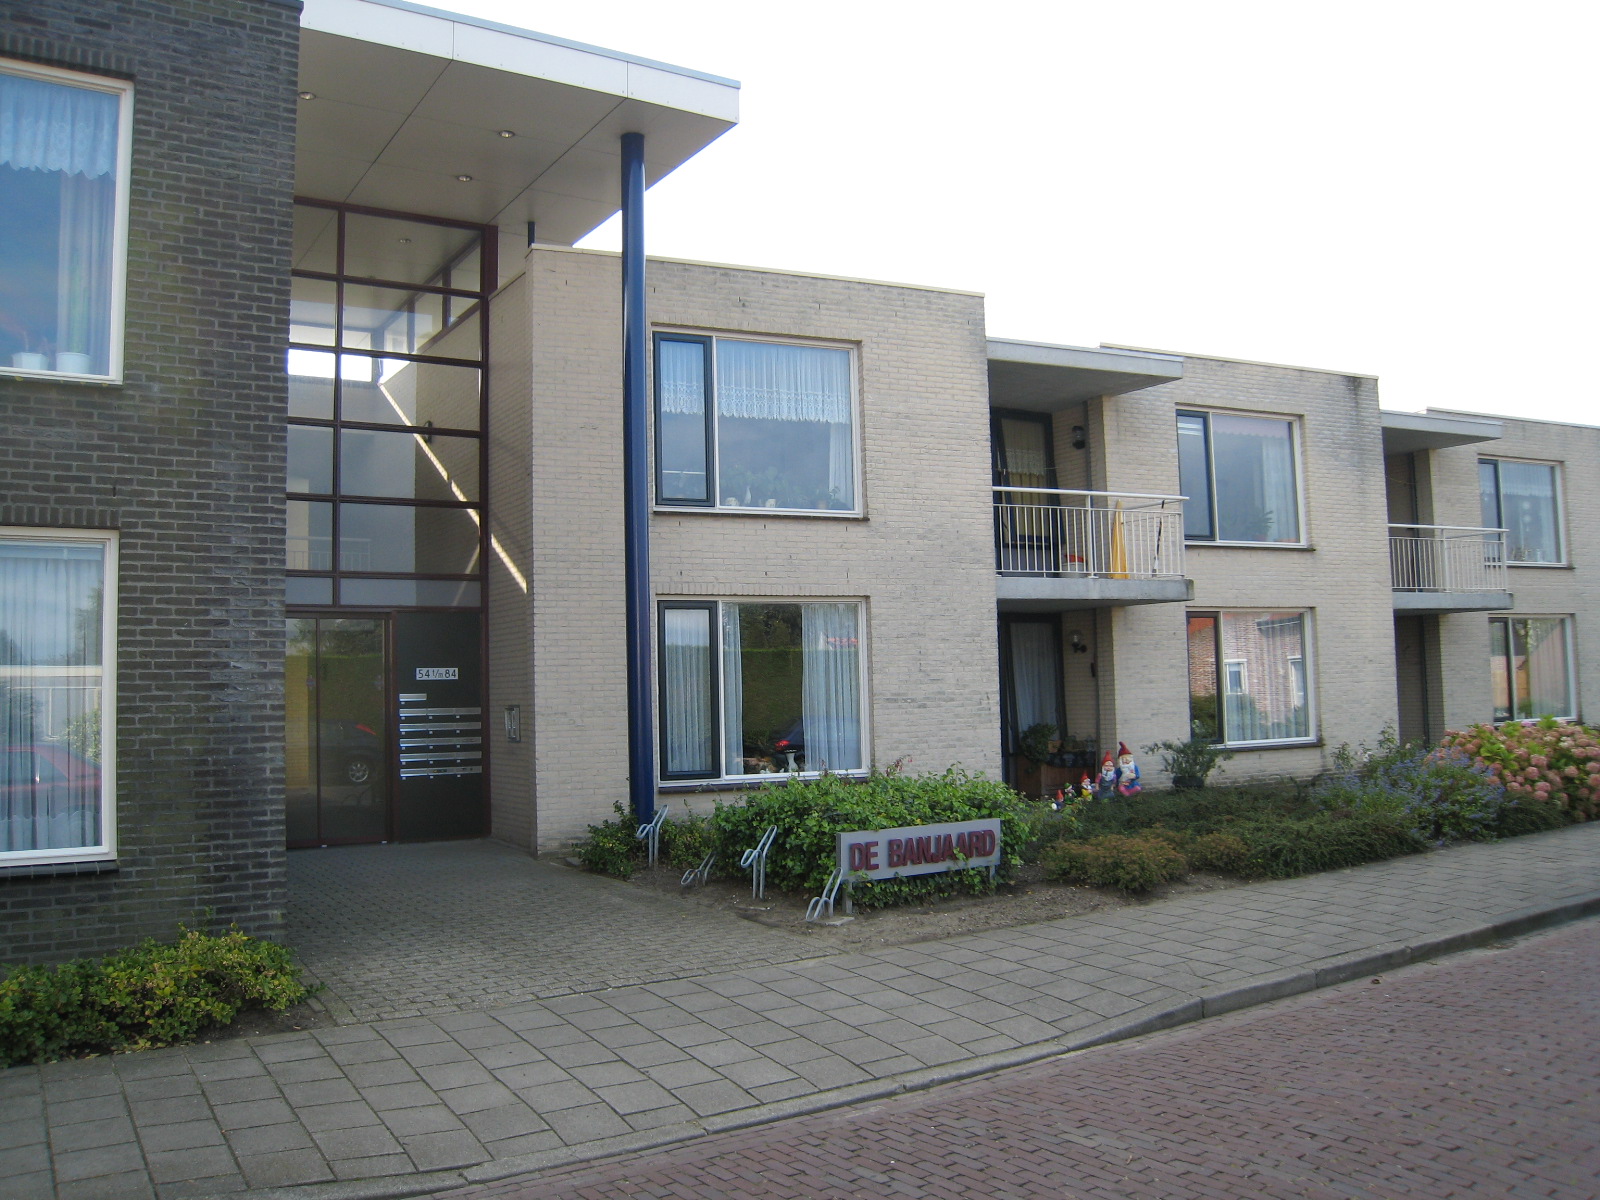 Banjaardstraat 84, 4456 BR Lewedorp, Nederland